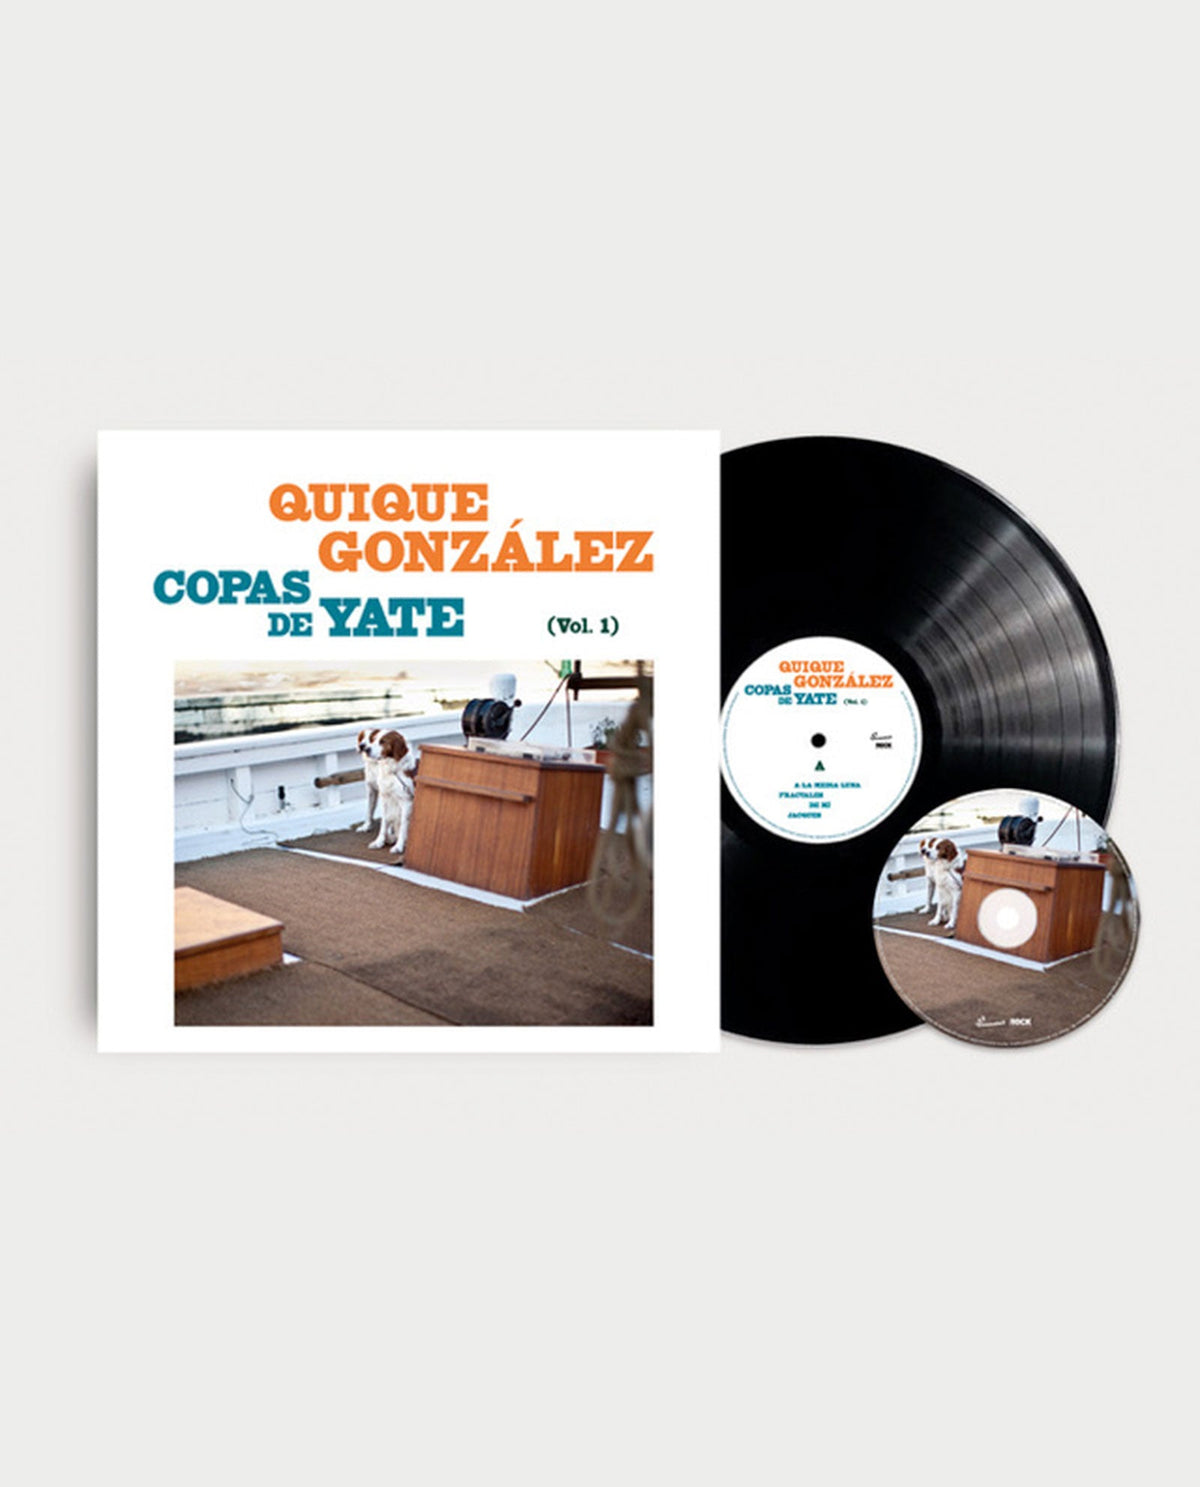 Quique González - LP Vinilo + CD "Copas de Yate (Vol. I)" - D2fy · Rocktud - Quique González